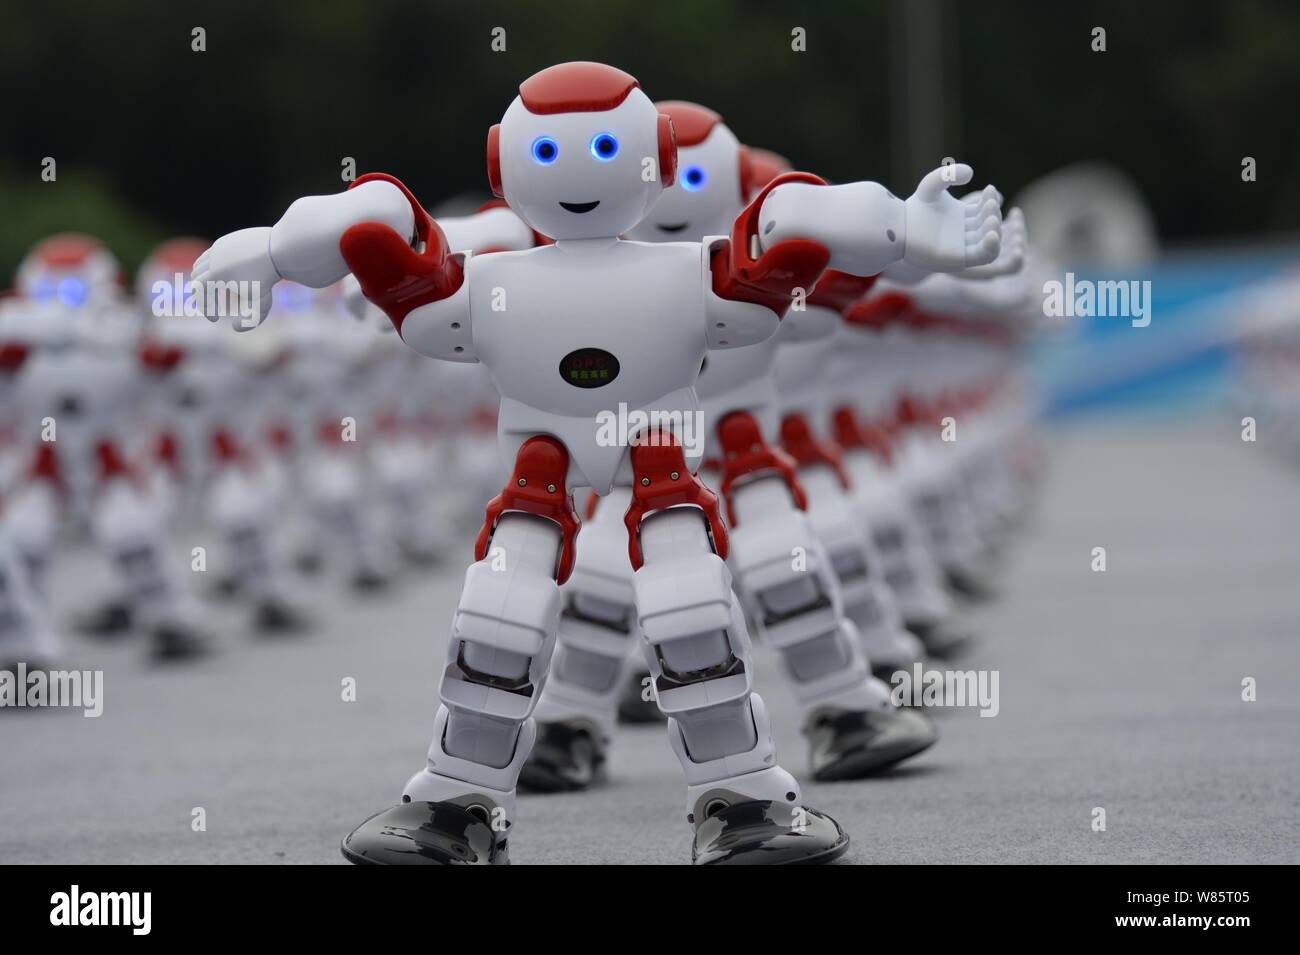 Robot da ballo immagini e fotografie stock ad alta risoluzione - Alamy